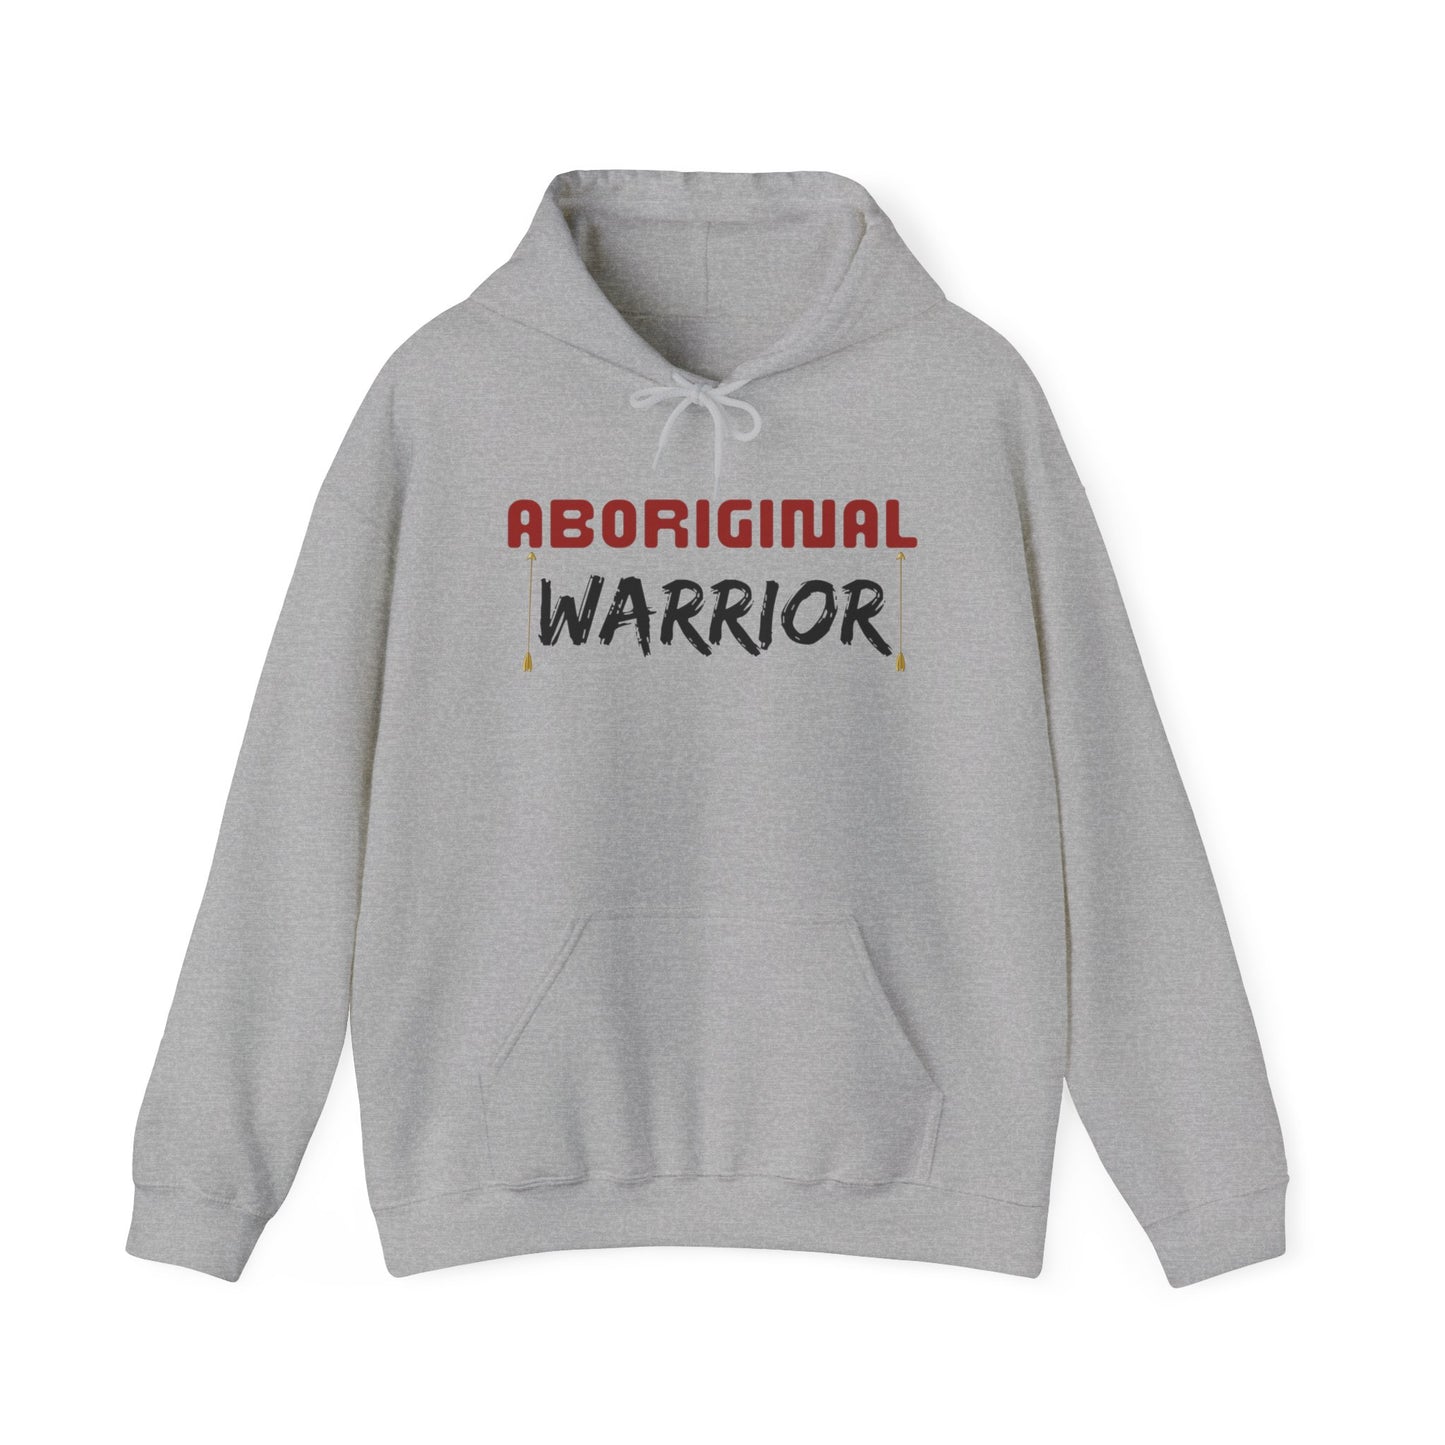 Aboriginal Warrior, Unisex Heavy Blend™ Hooded Sweatshirt